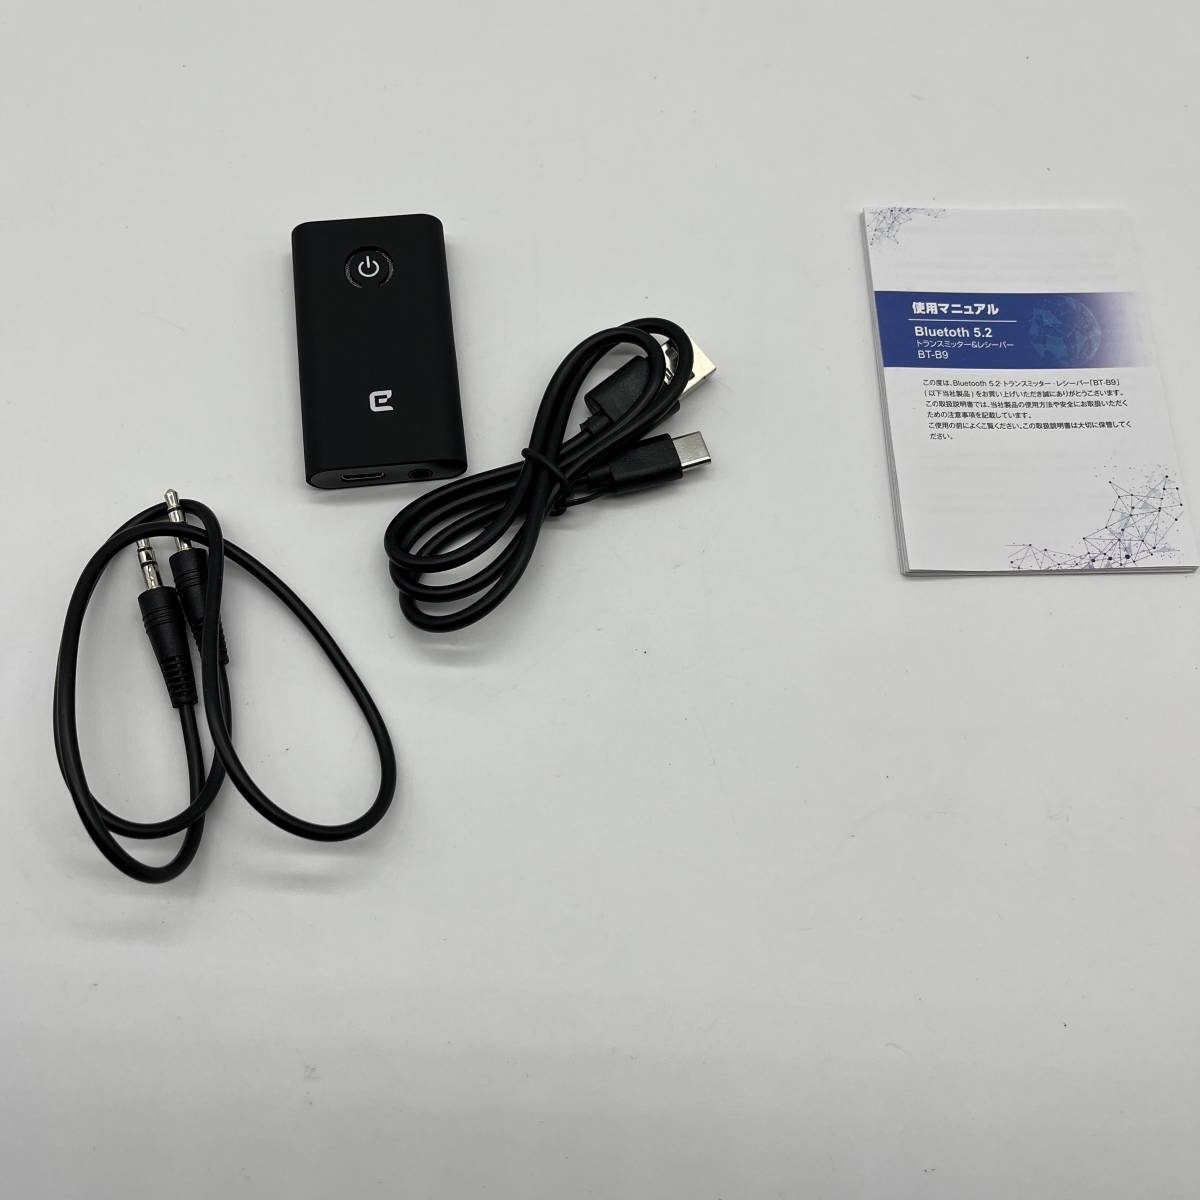 最低価格の Eletoker Bluetoothトランスミッター レシーバー 光デジタル対応 一台二役 aptX HD LL対応 Bluetooth 